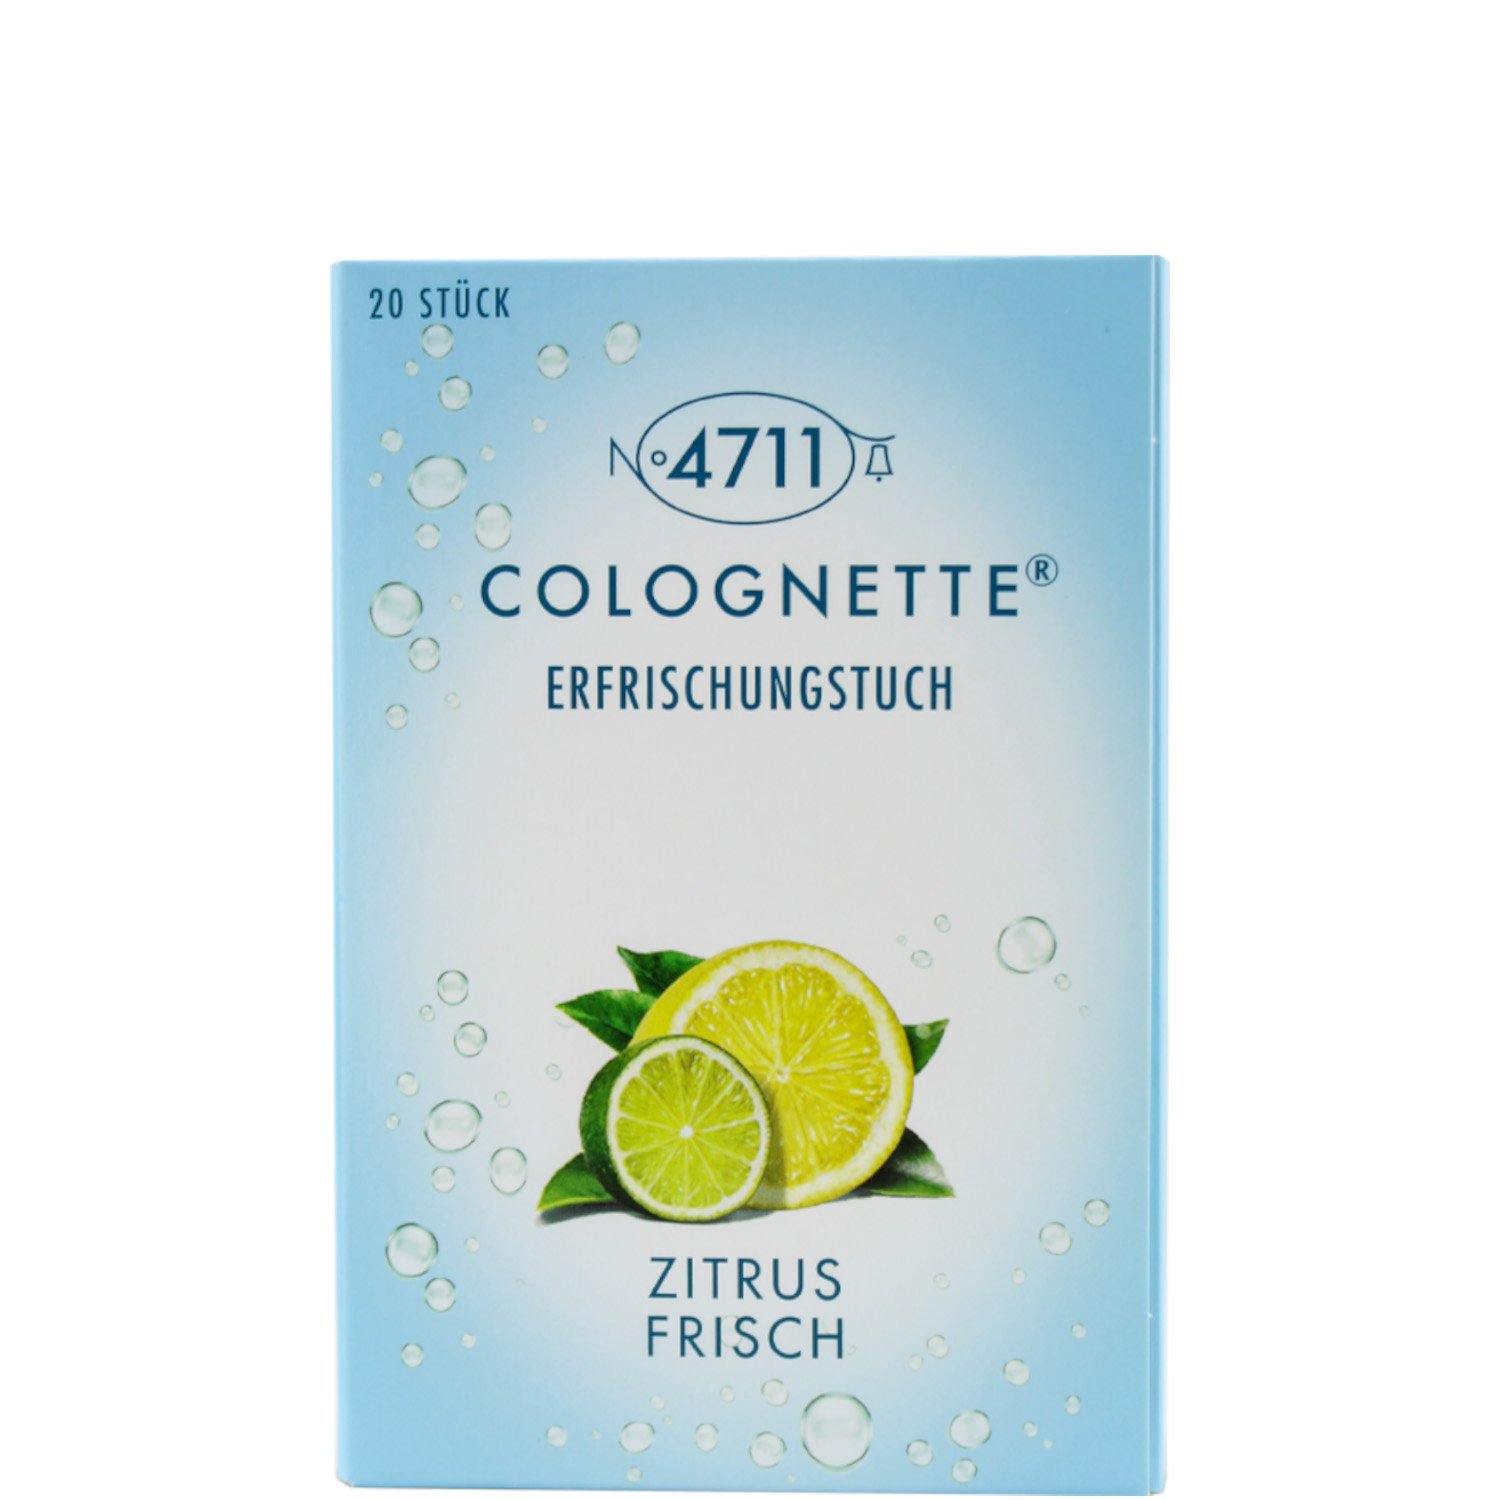 4711 Echt Kölnisch Wasser Colognette Erfrischungstücher Zitrus Frisch 20er